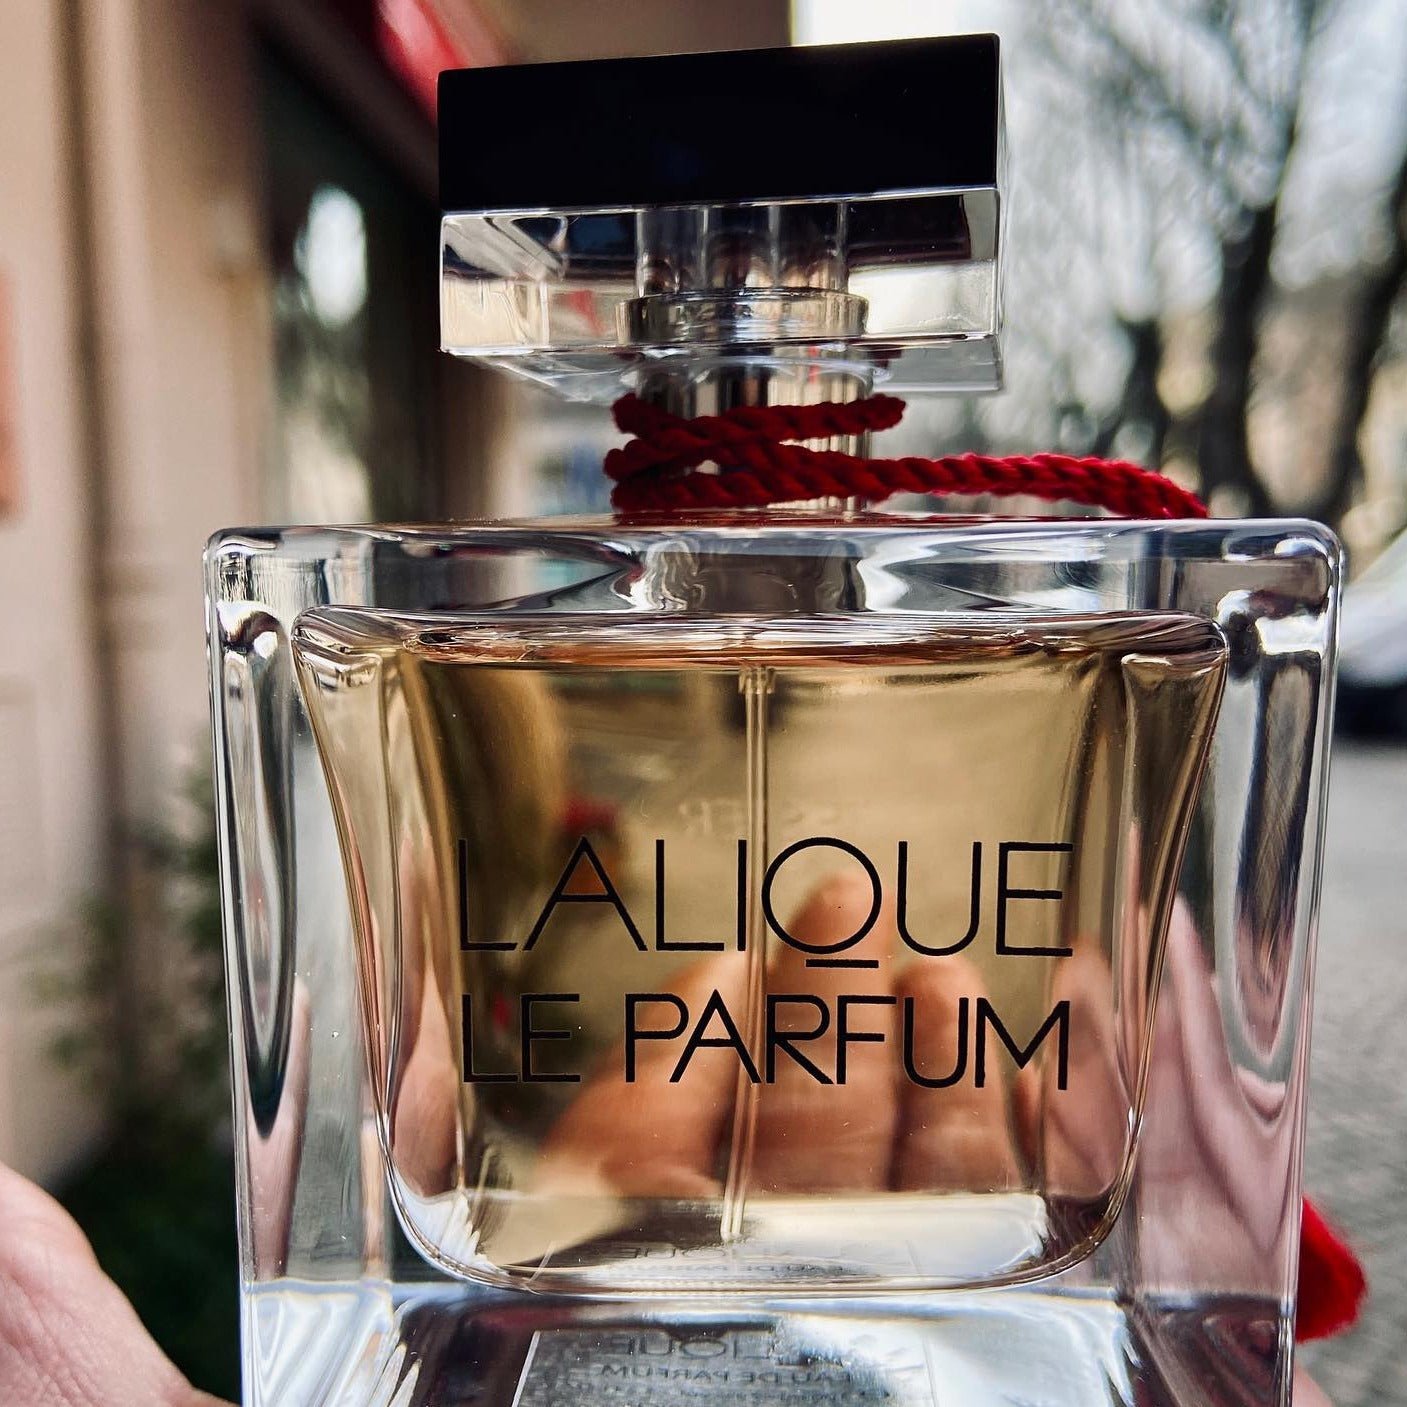 Lalique Le Parfum EDP | My Perfume Shop Australia